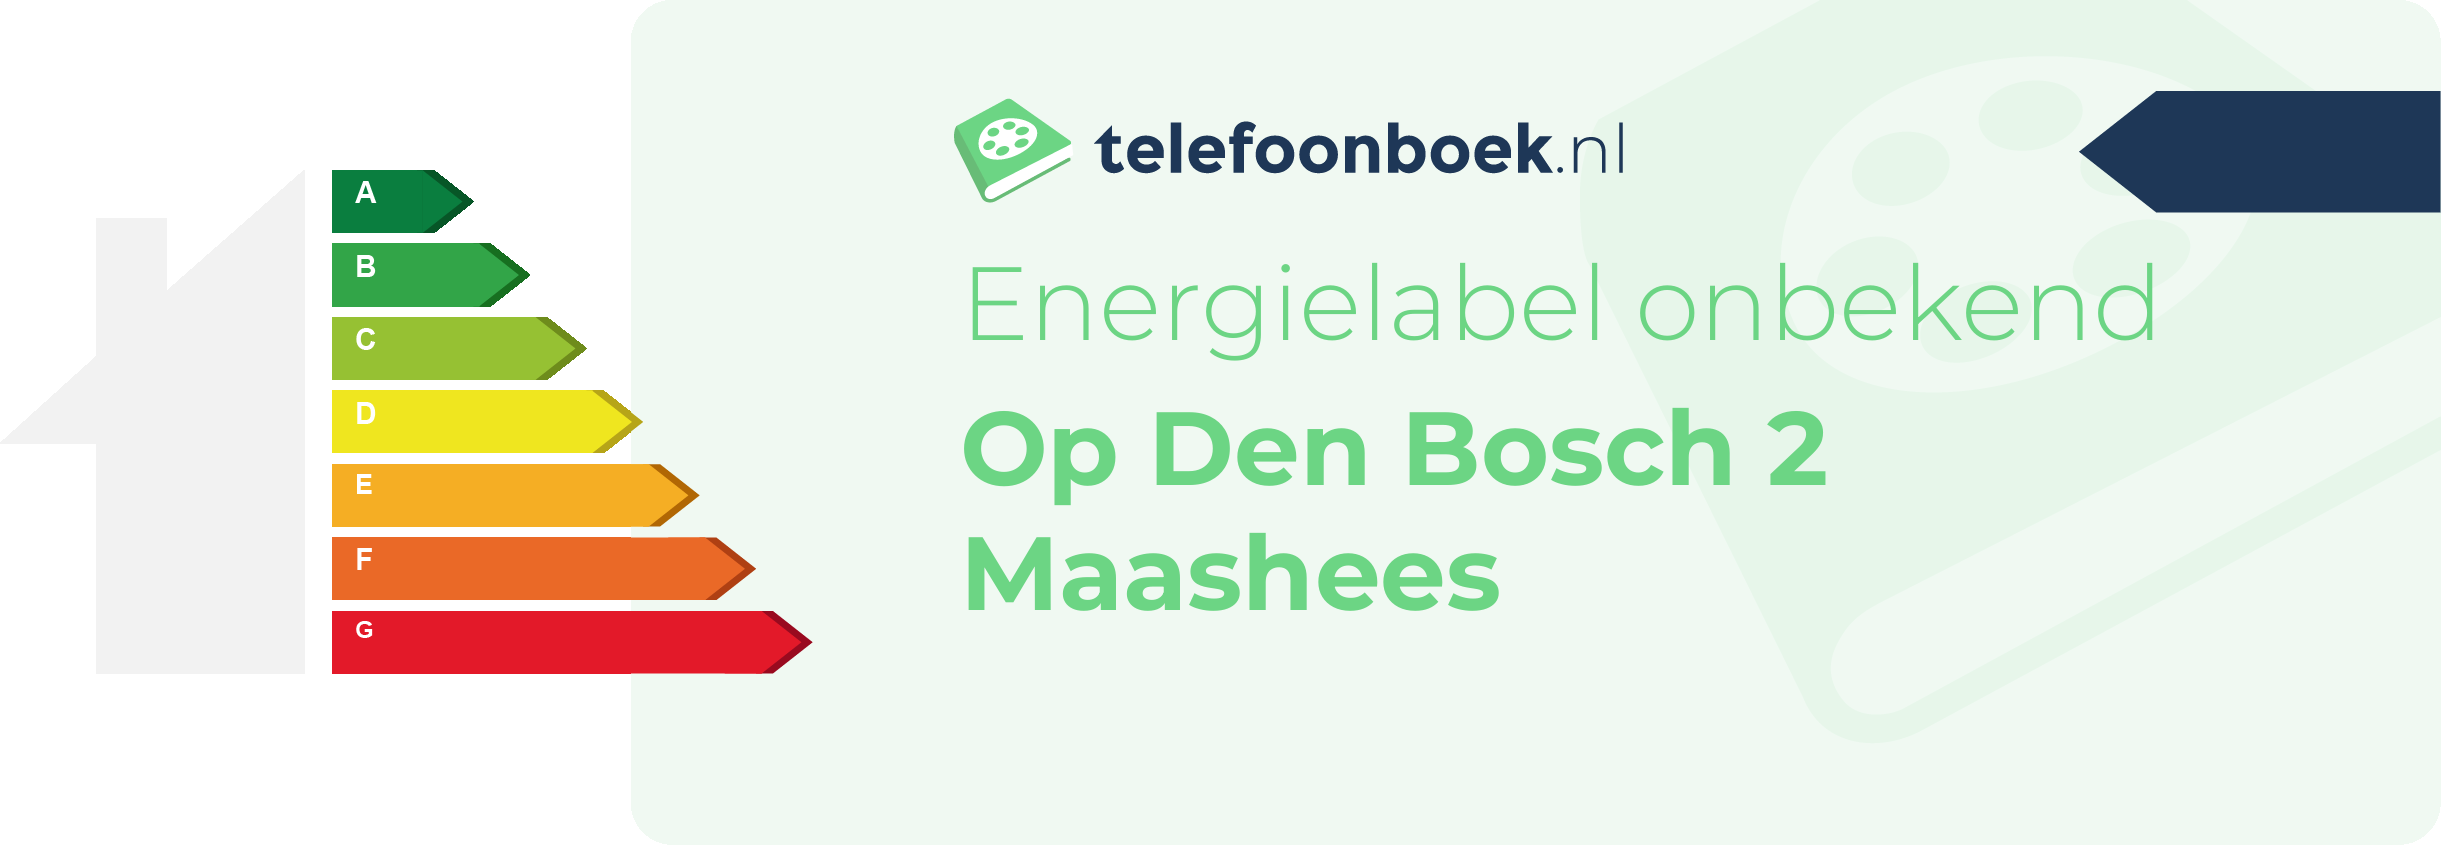 Energielabel Op Den Bosch 2 Maashees